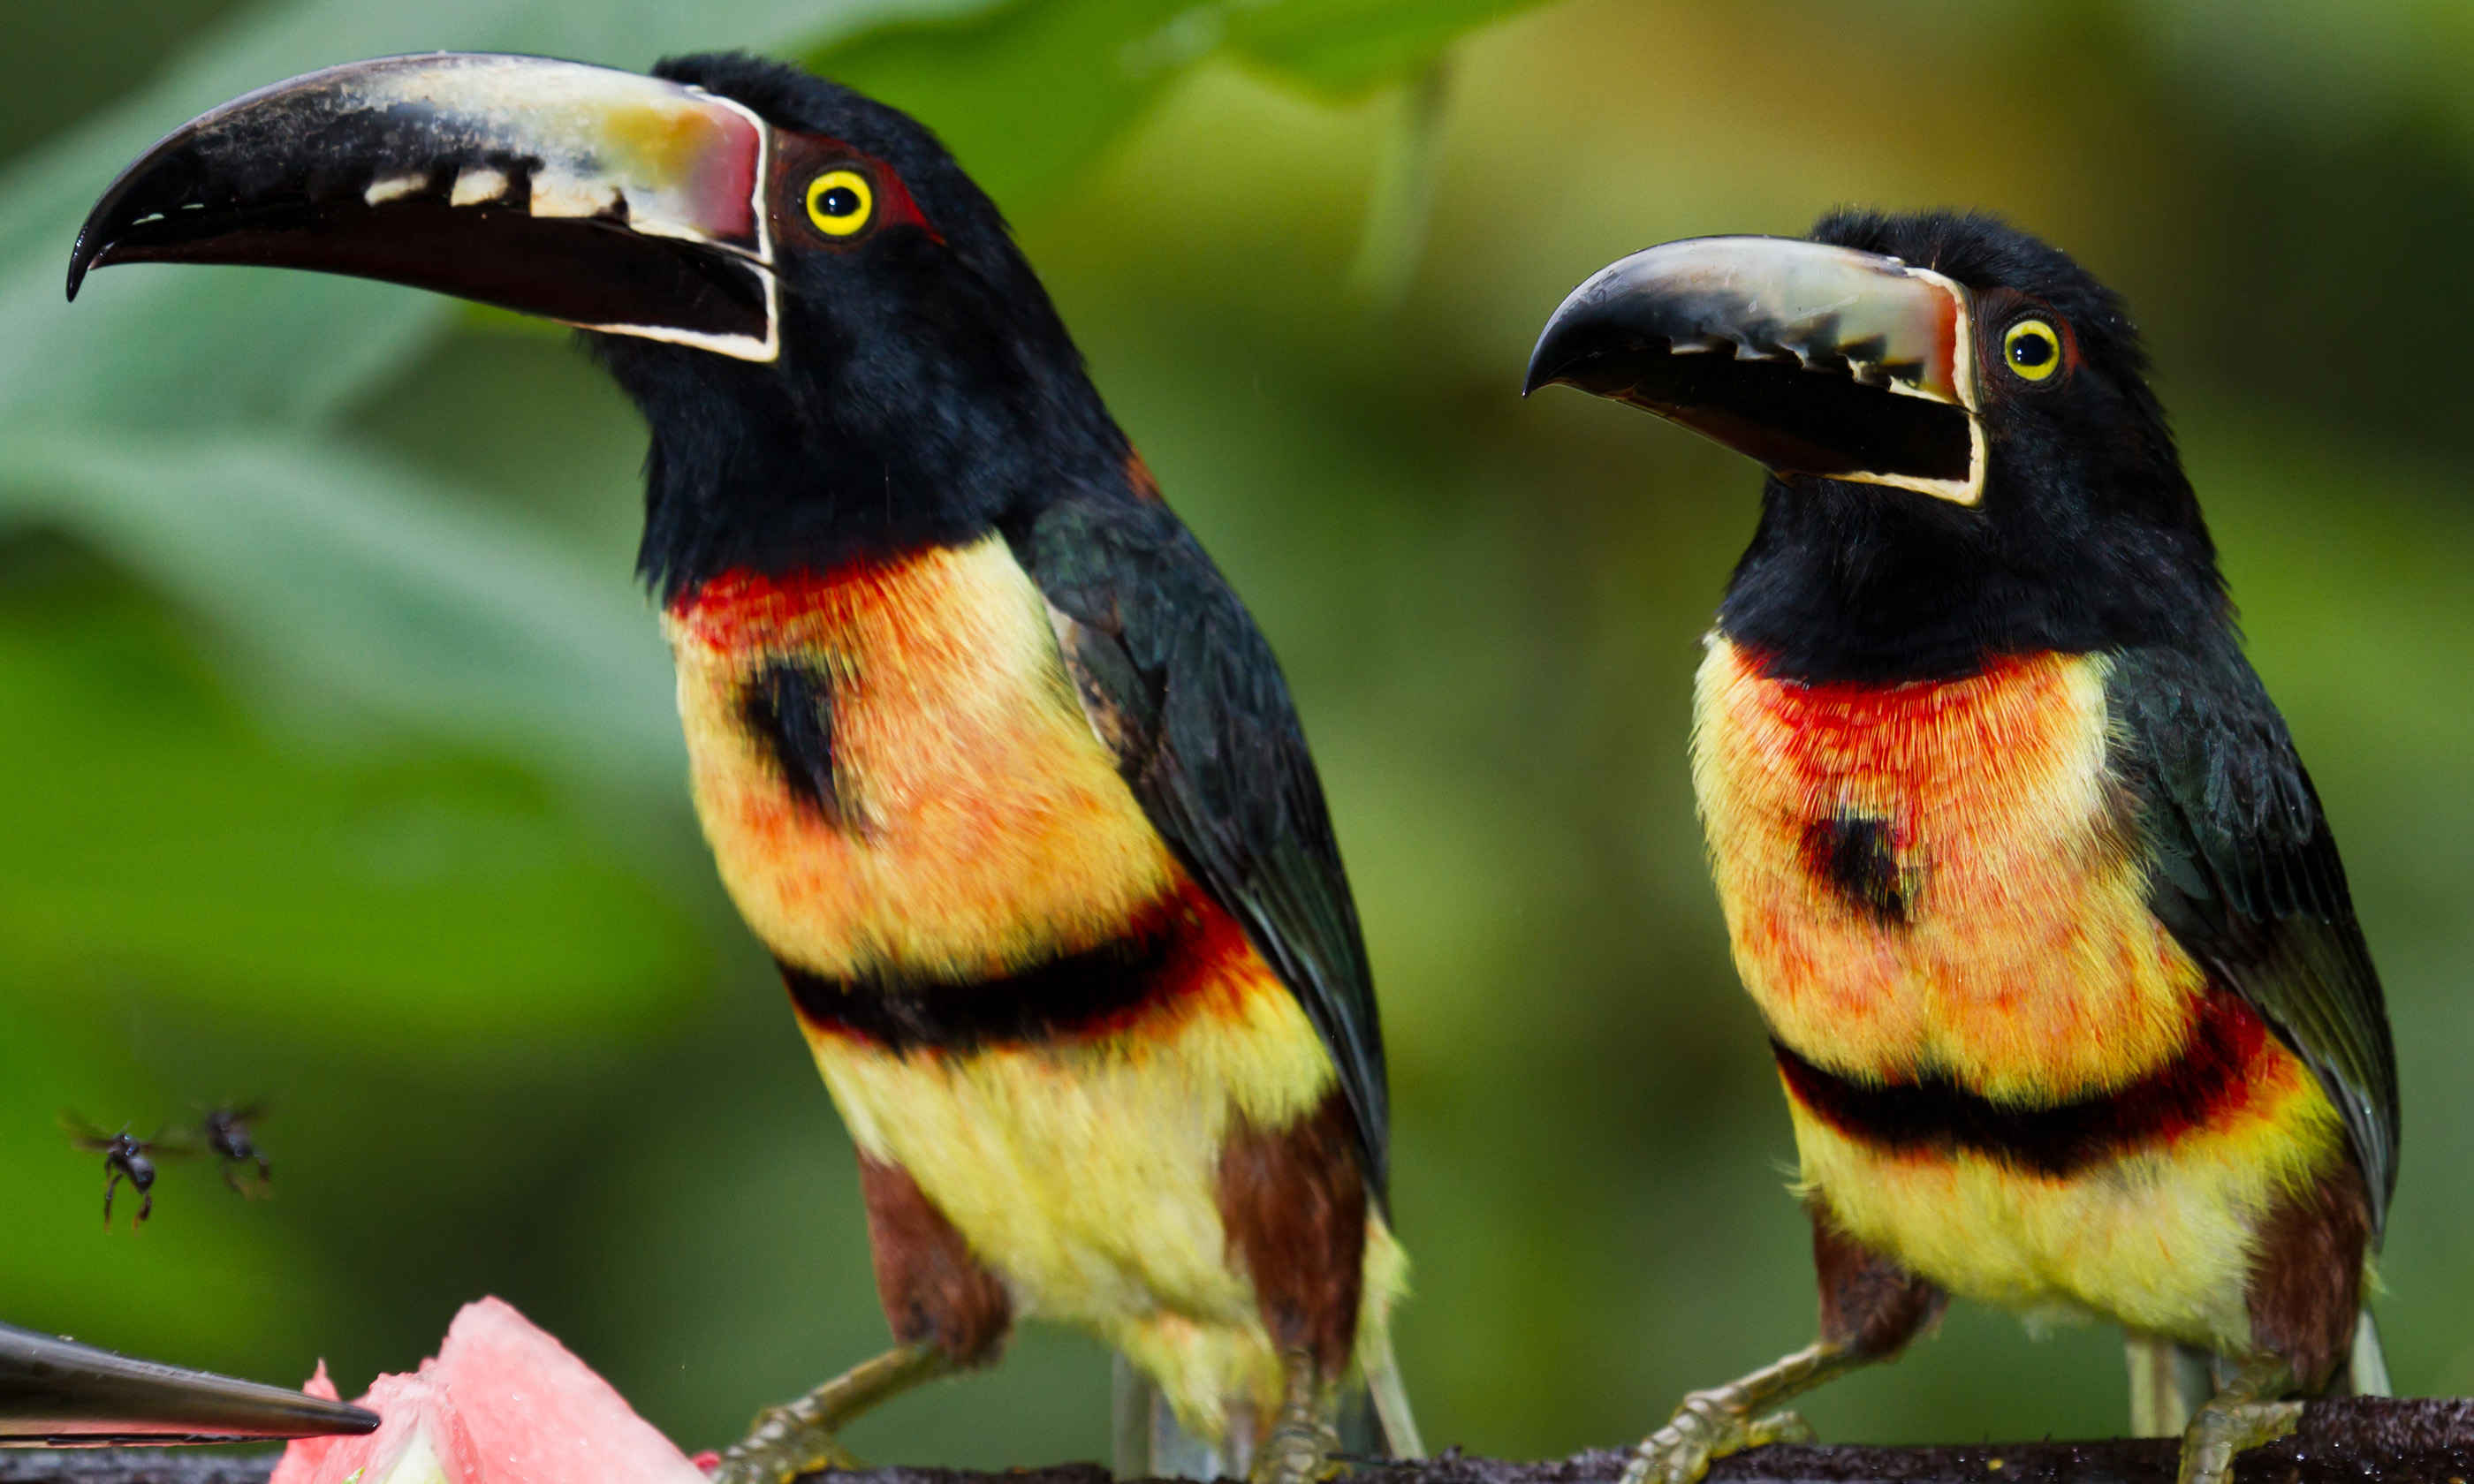 Aracari toucan, Belize (Shutterstock.com)